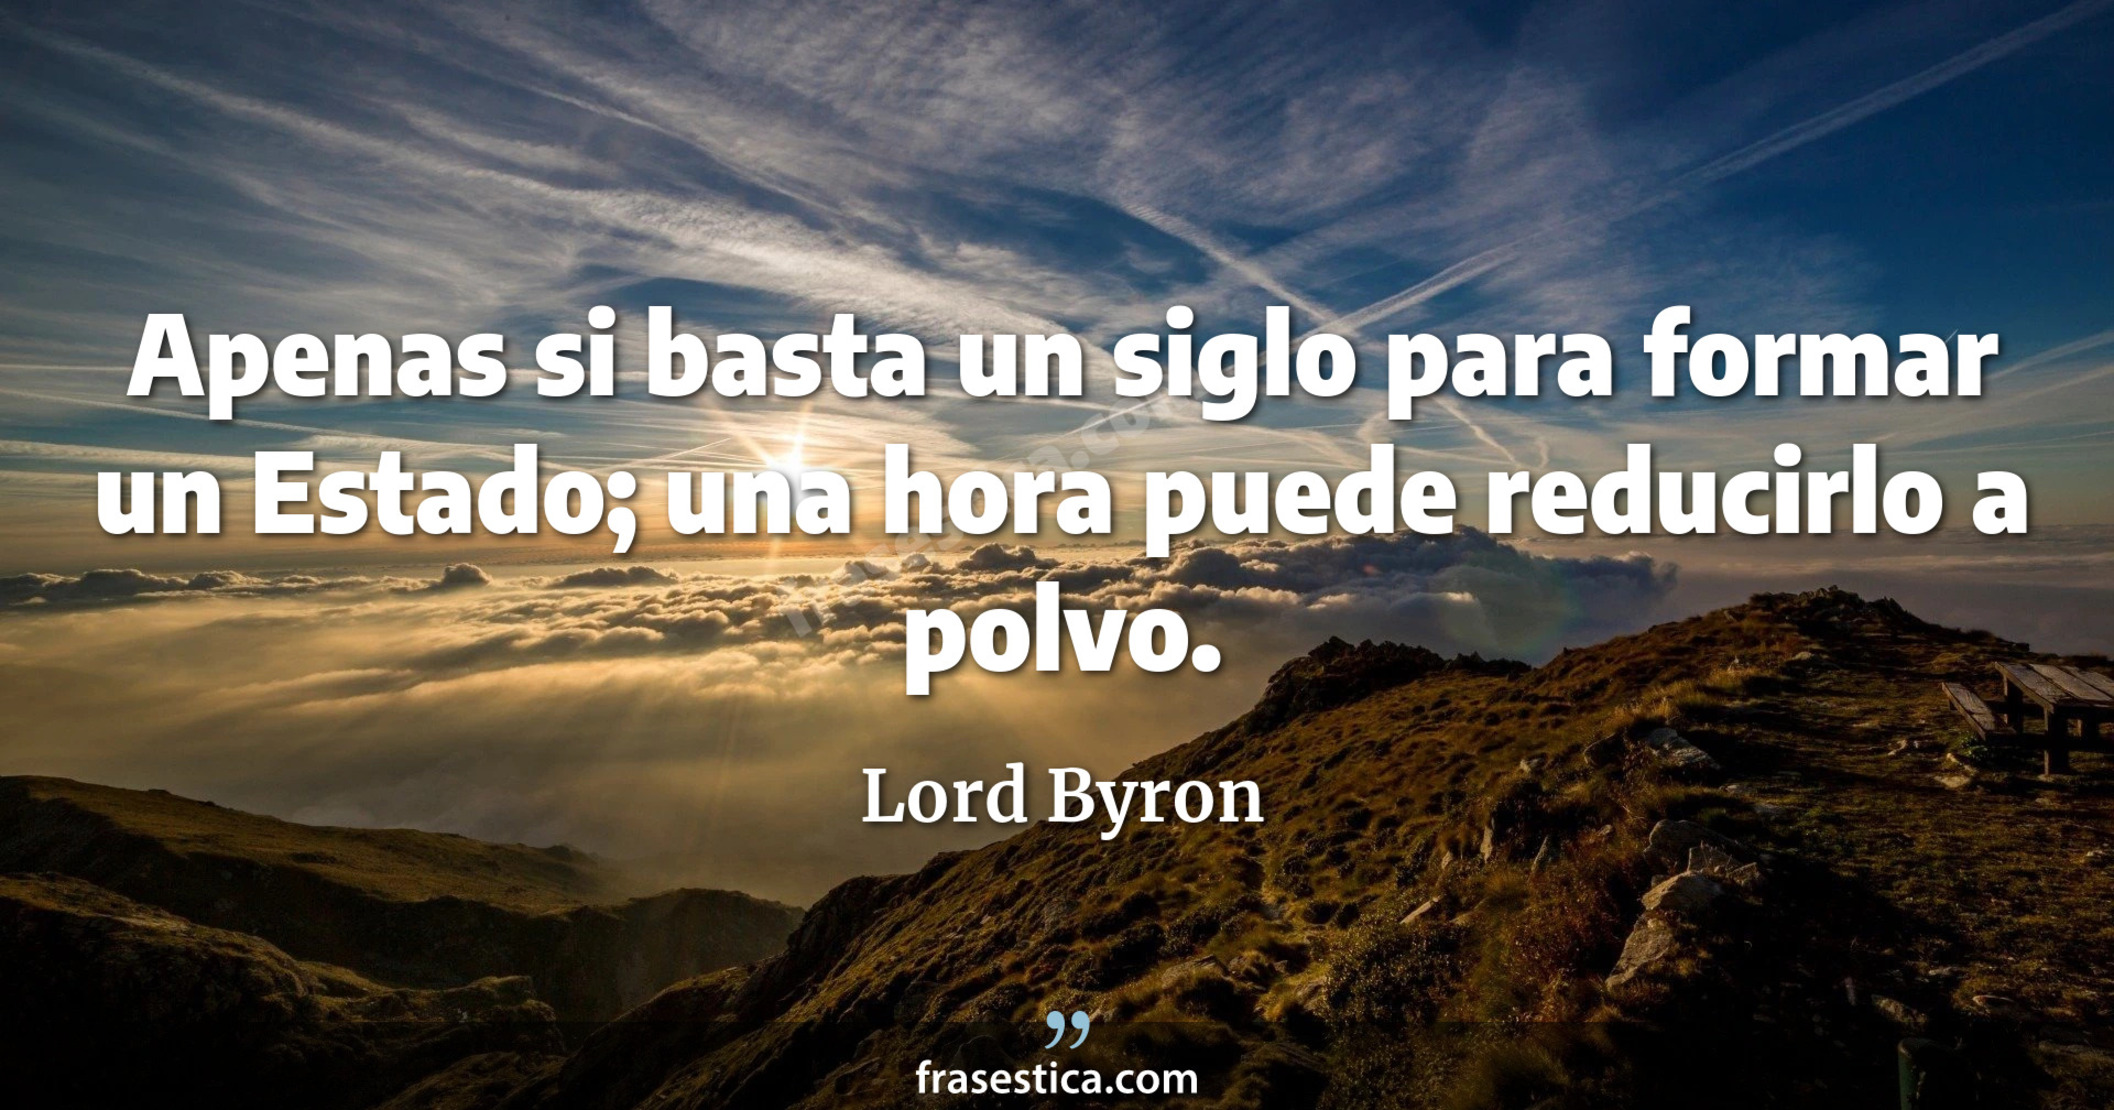 Apenas si basta un siglo para formar un Estado; una hora puede reducirlo a polvo. - Lord Byron